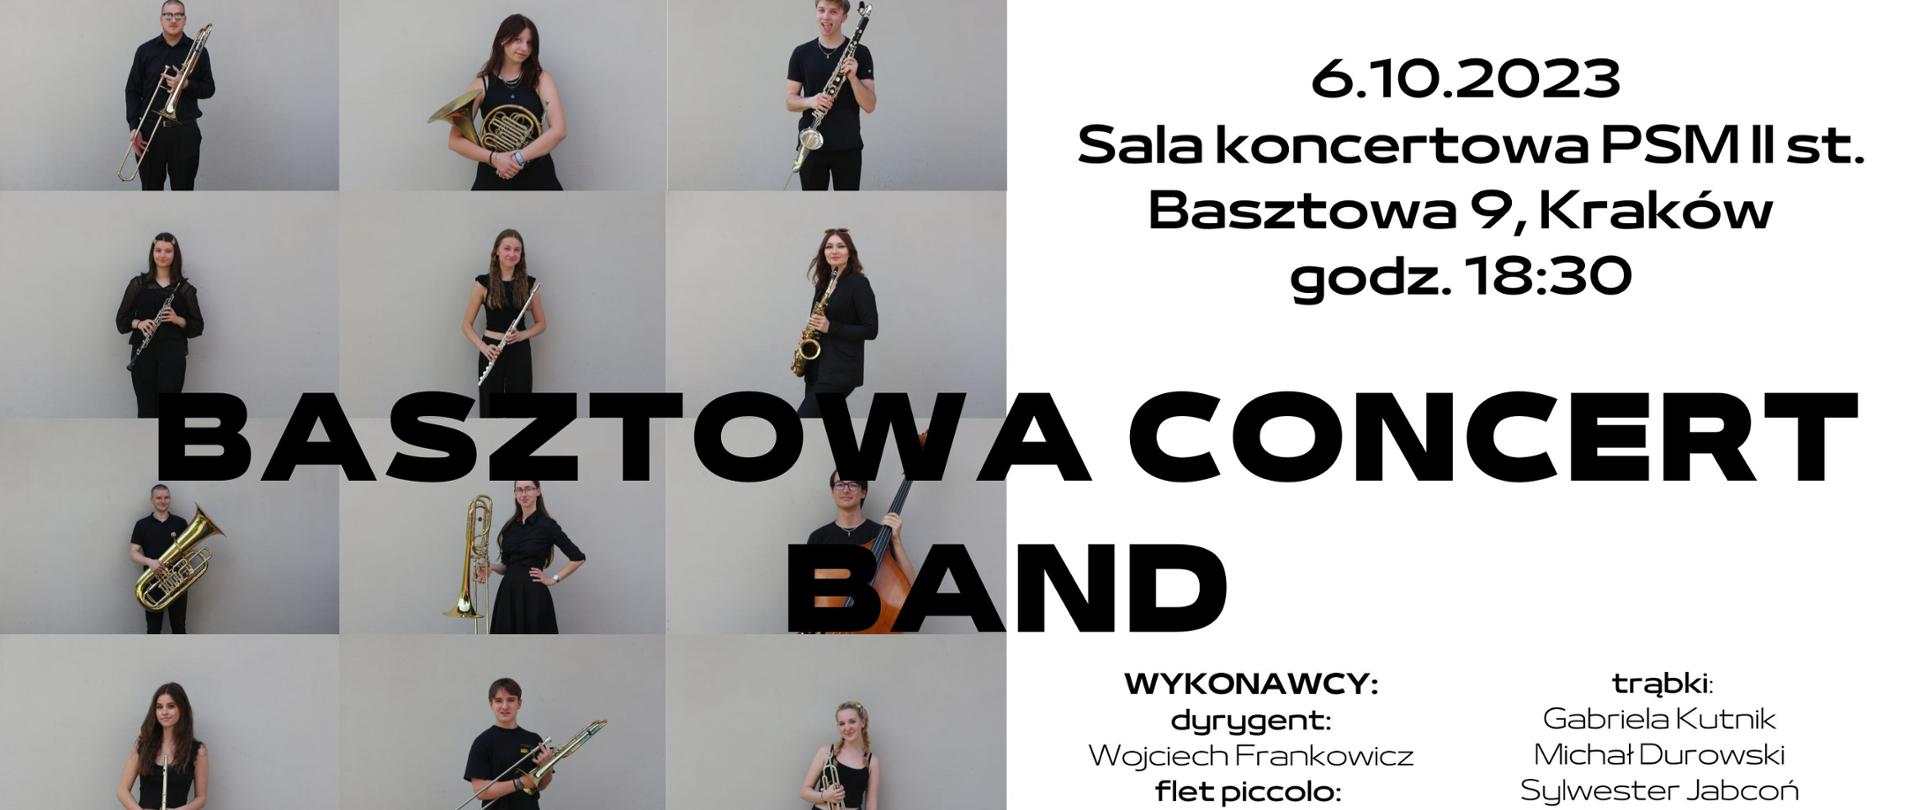 Koncert "Basztowa Concert Band" 6.10.2023 godz. 18.30 plakat po lewej stronie zdjęcia osób po prawej napis 